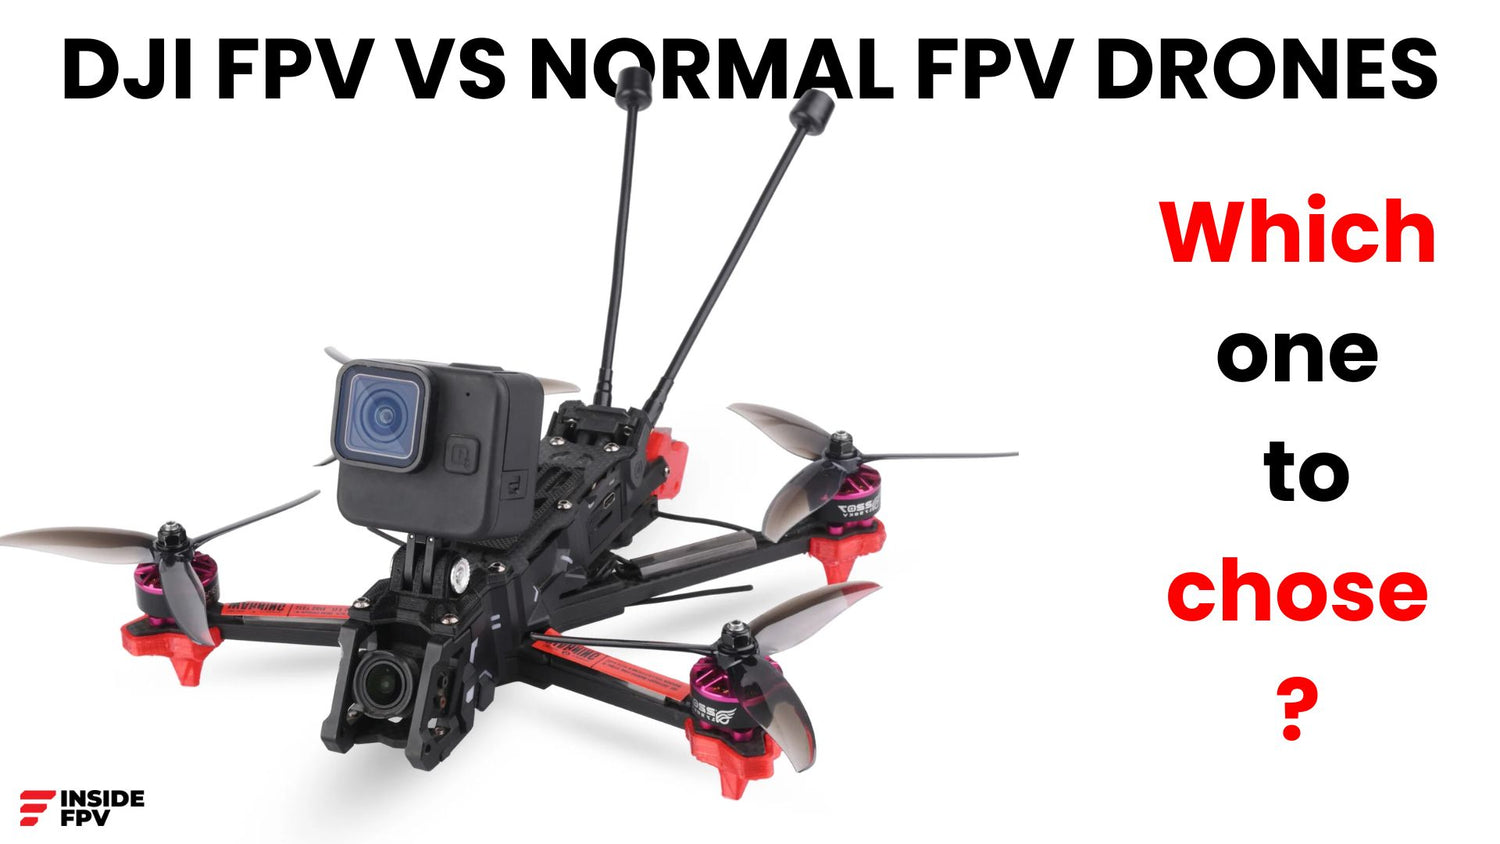 DJI FPV VS NORMAL FPV DRONES